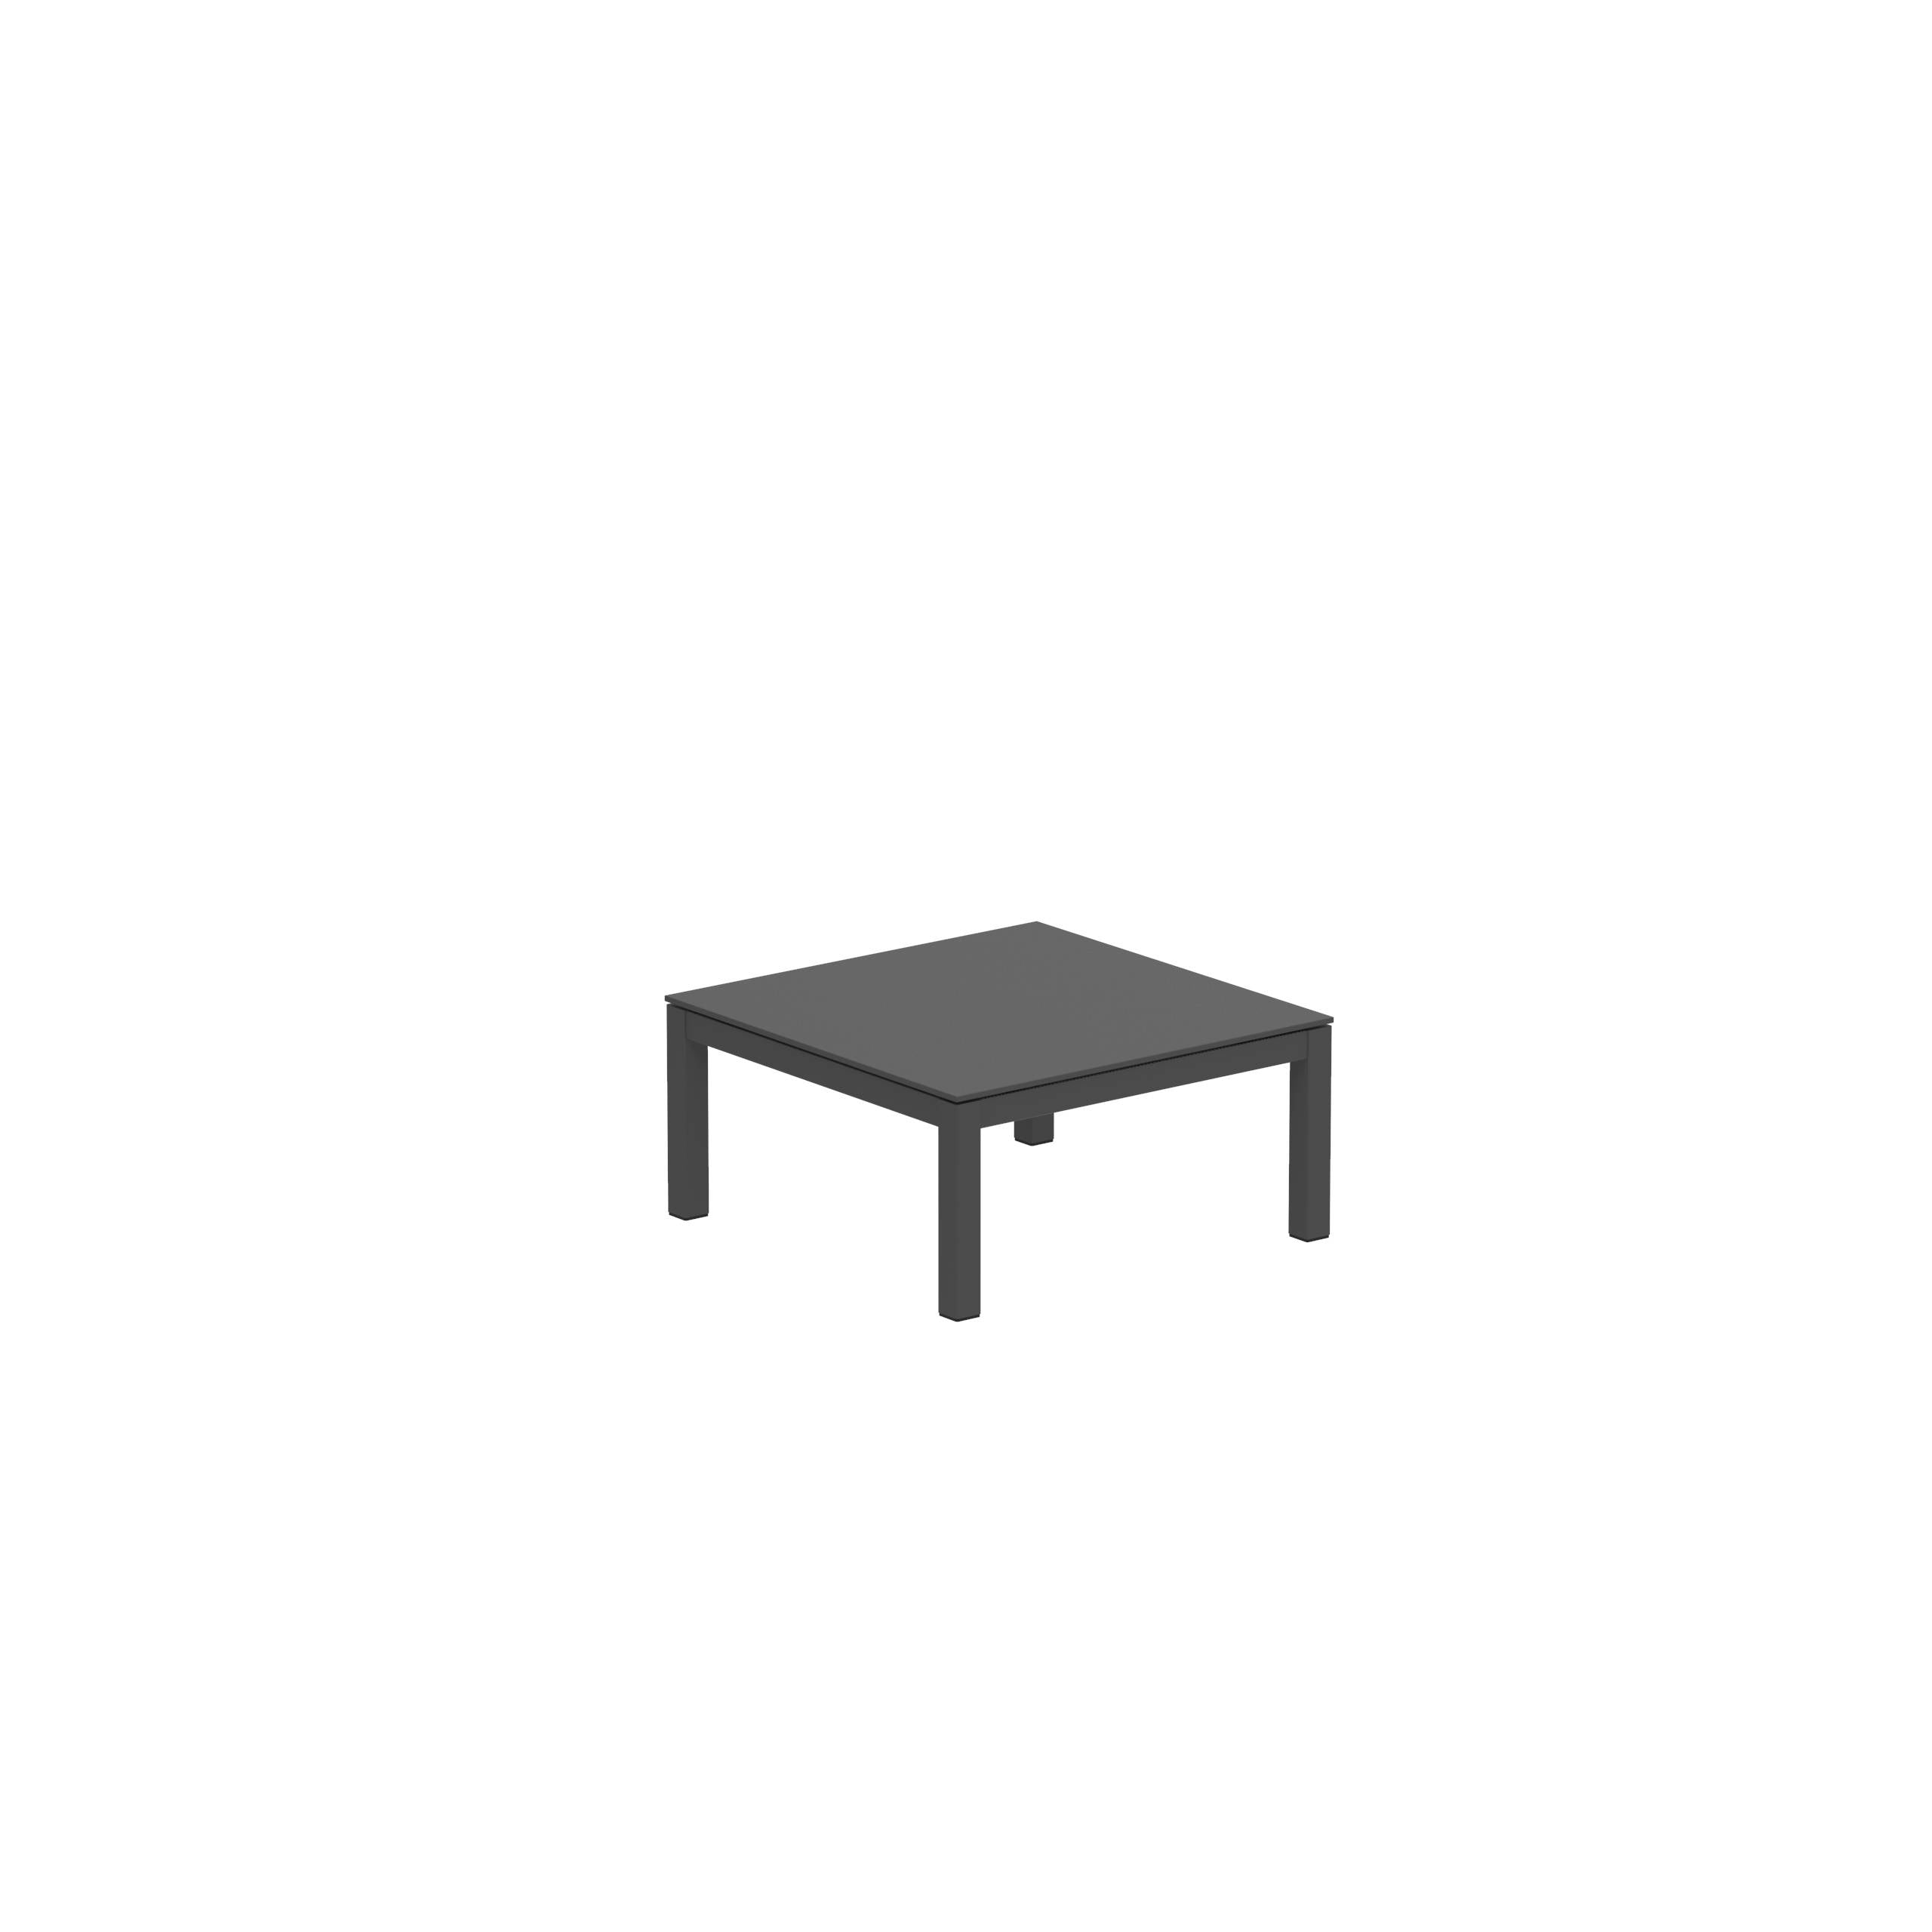 Taboela Low Table 80x80cm Anthracite+ Ceramic Top Black